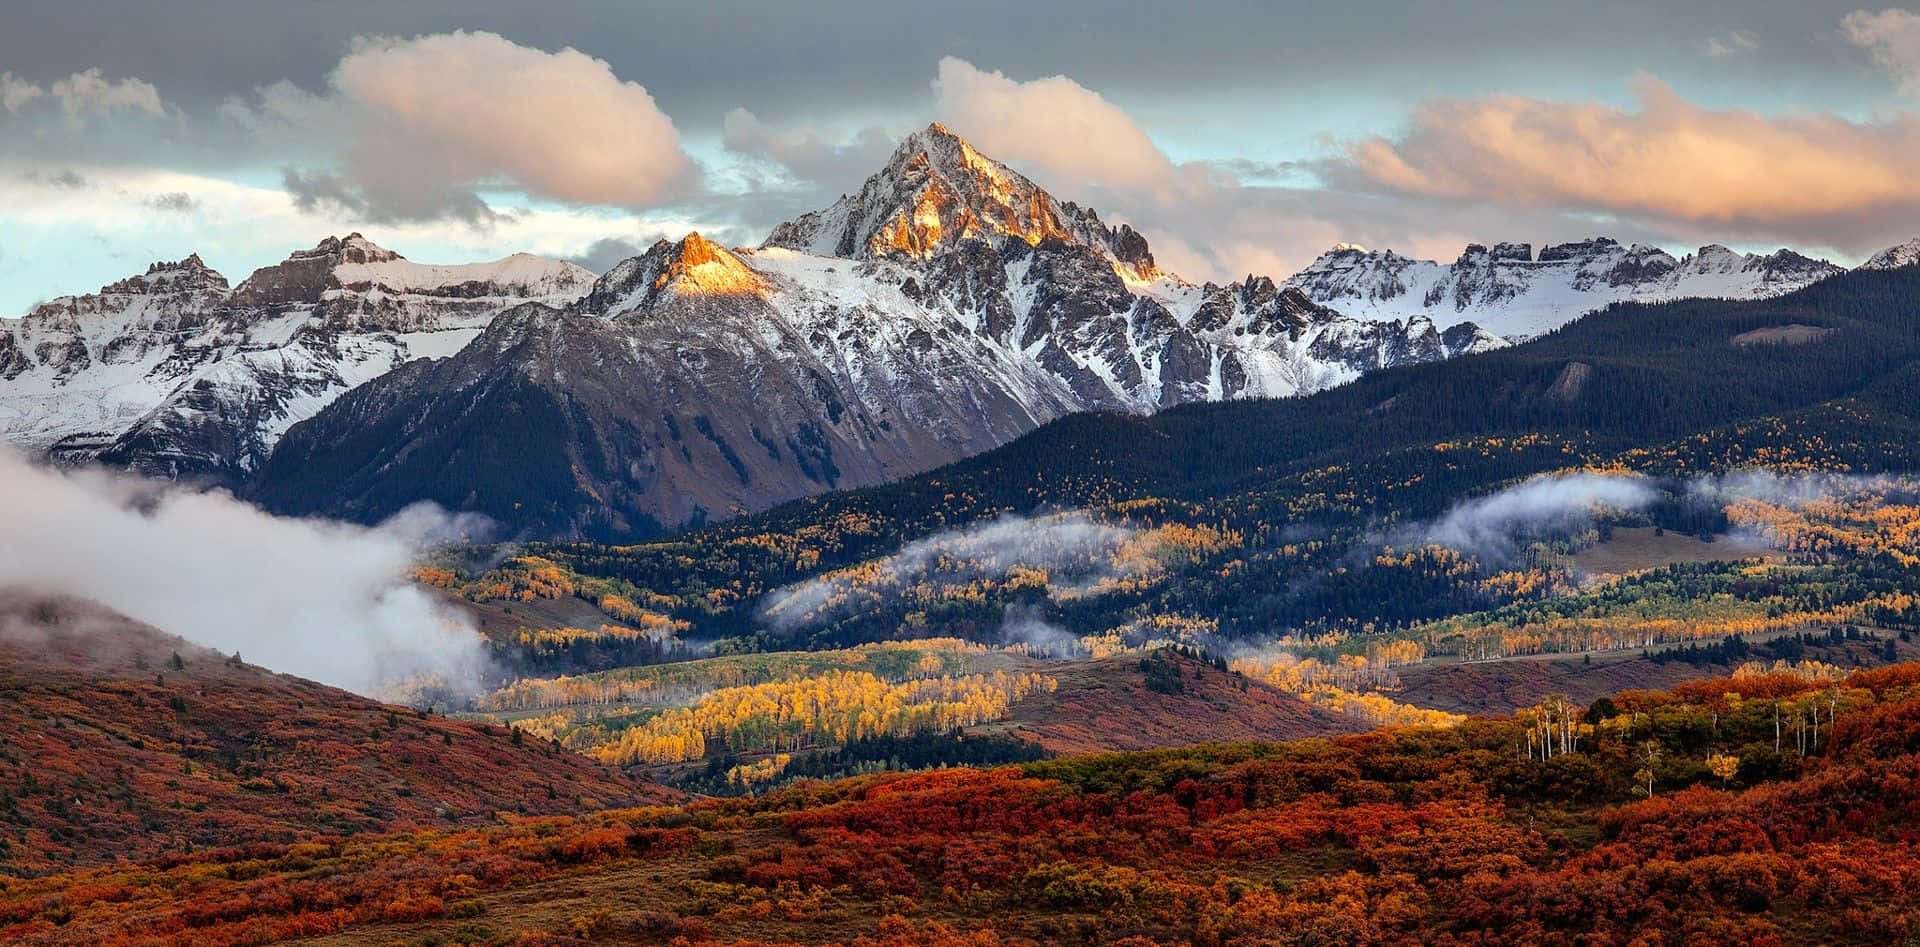 Disfrutade La Majestuosa Belleza De Las Montañas De Colorado.